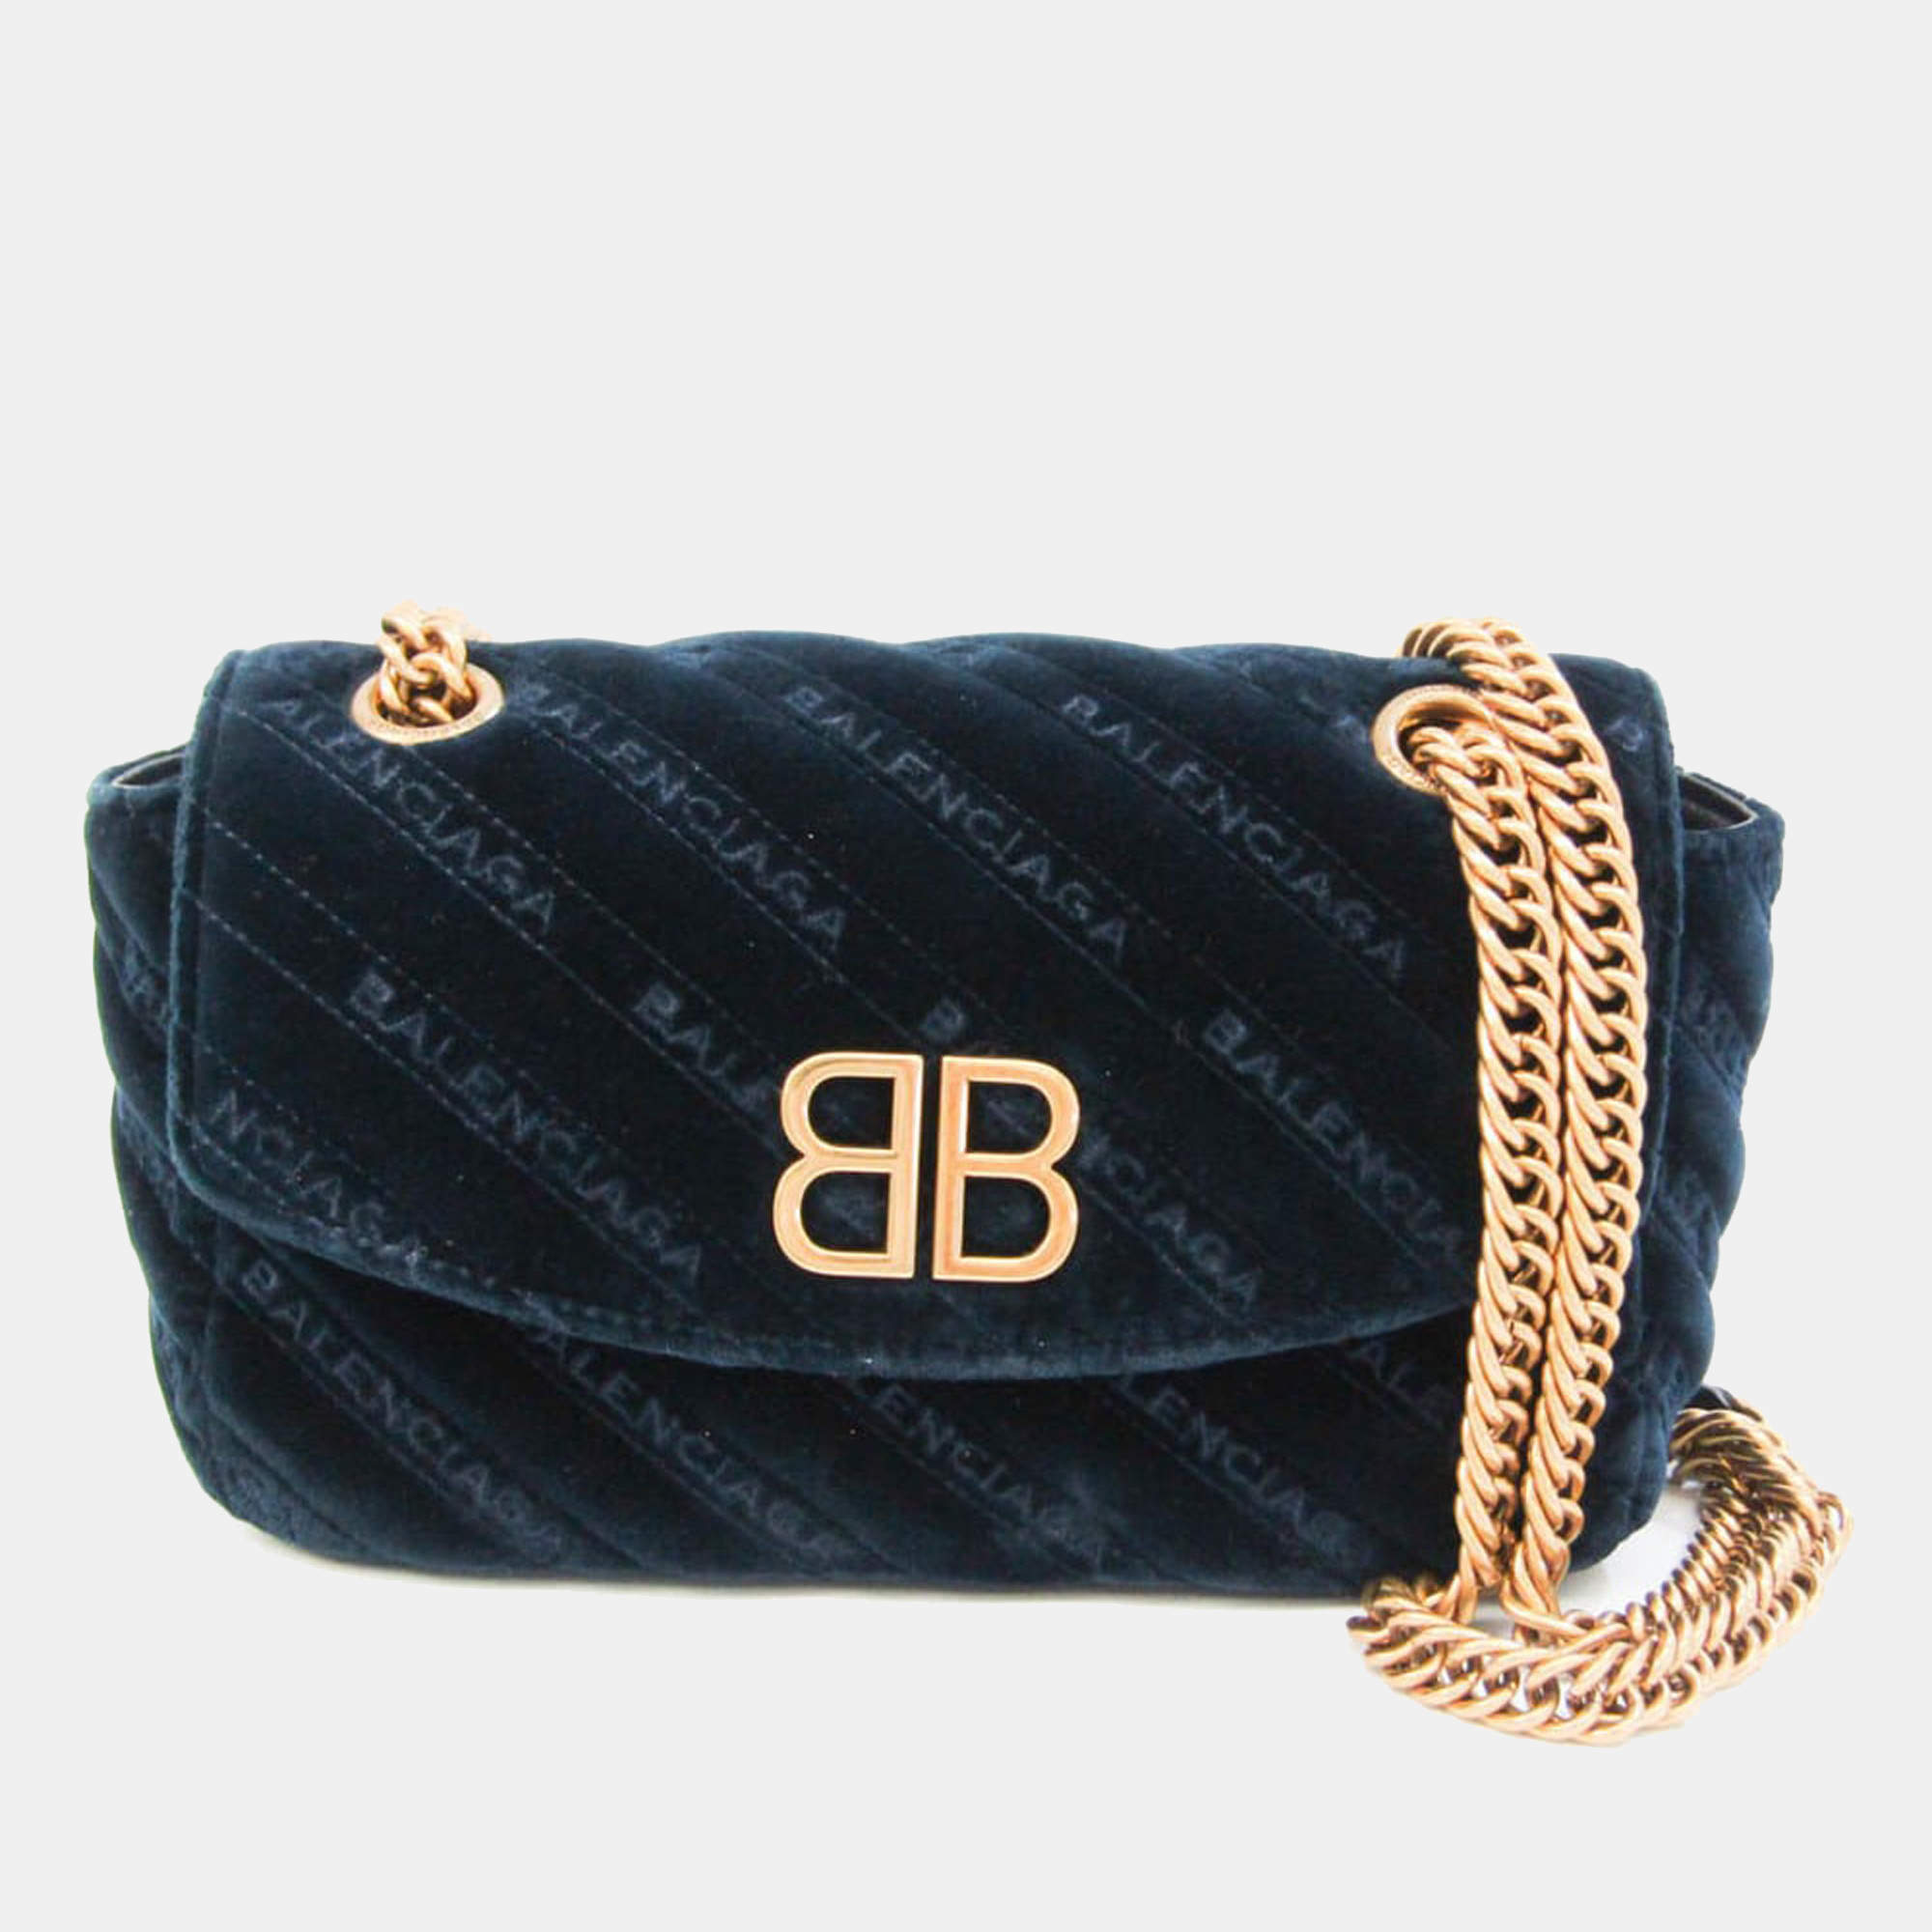 Bb chain handbag Balenciaga Blue in Suede - 30665972